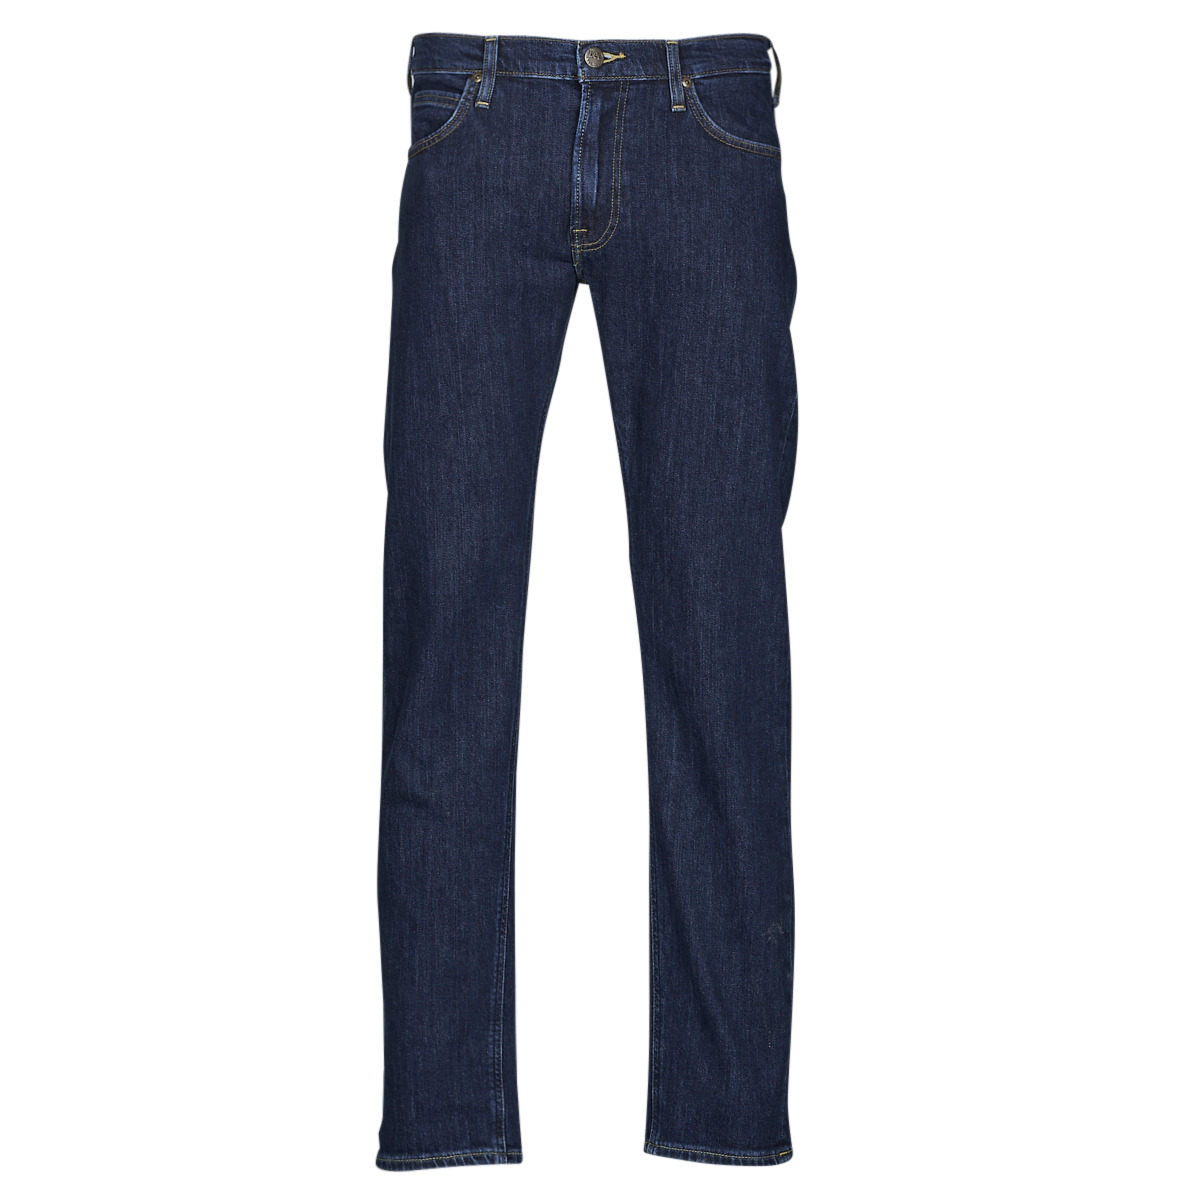 Lee Daren Zip Fly Jeans Blauw 30 / 32 Man